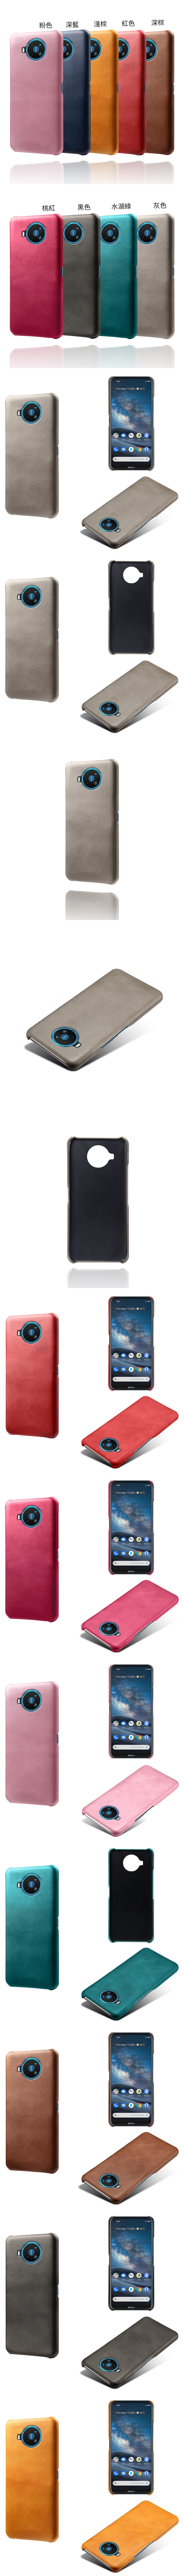 Nokia 8.3 5G 皮革保護殼(PLAIN) - 牛皮仿真皮紋單色背蓋素色多色手機殼保護套手機套